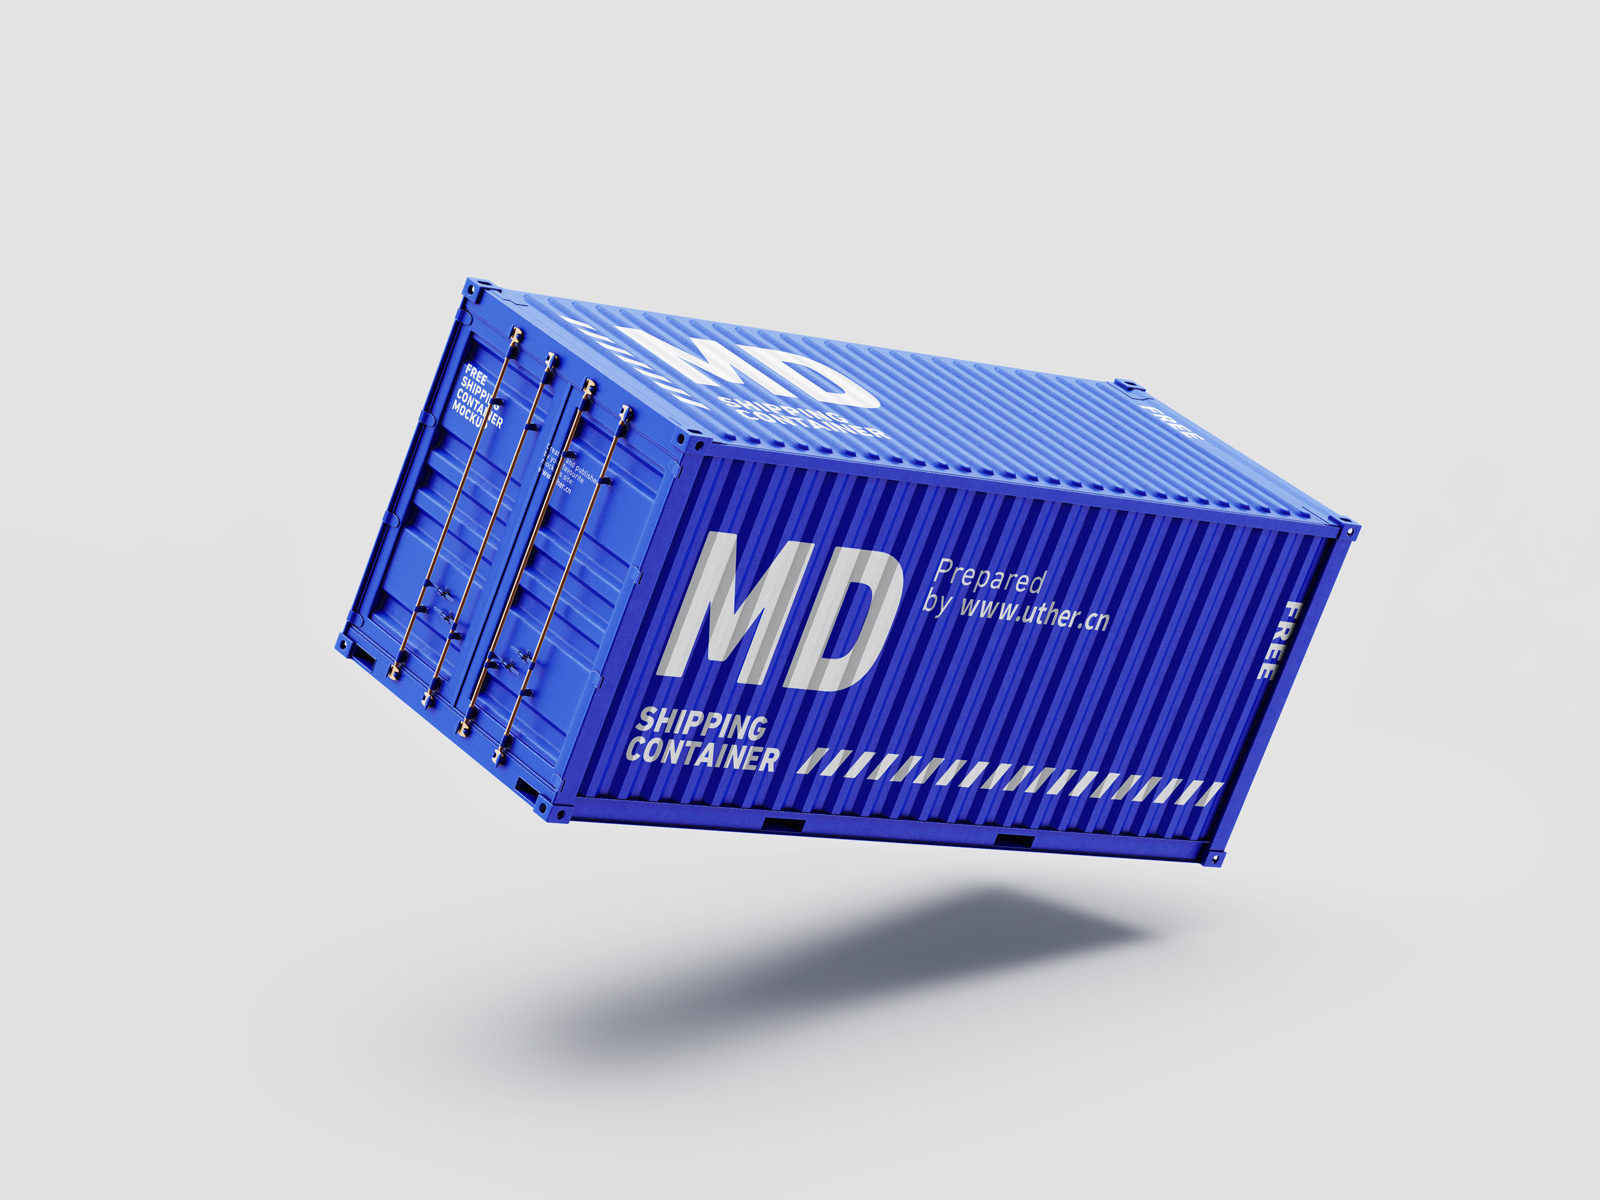 高质量悬浮的侧面运输集装箱样机模型container mockup .psd素材